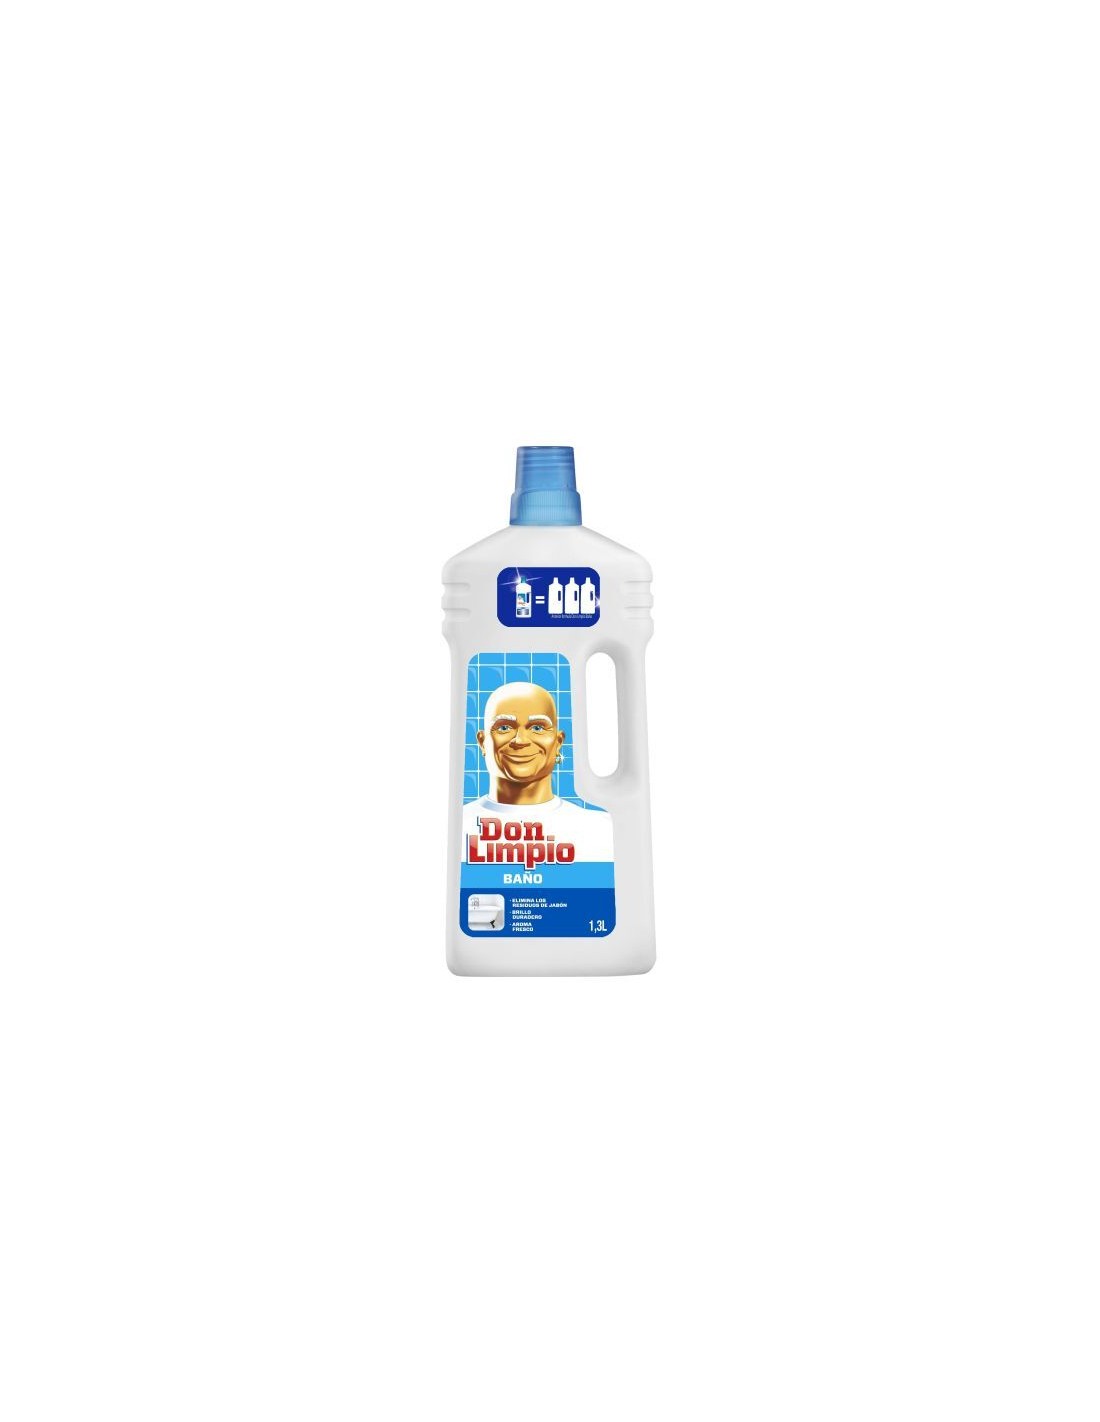 DON LIMPIO Limpiador de Baño Botella 1,5L.